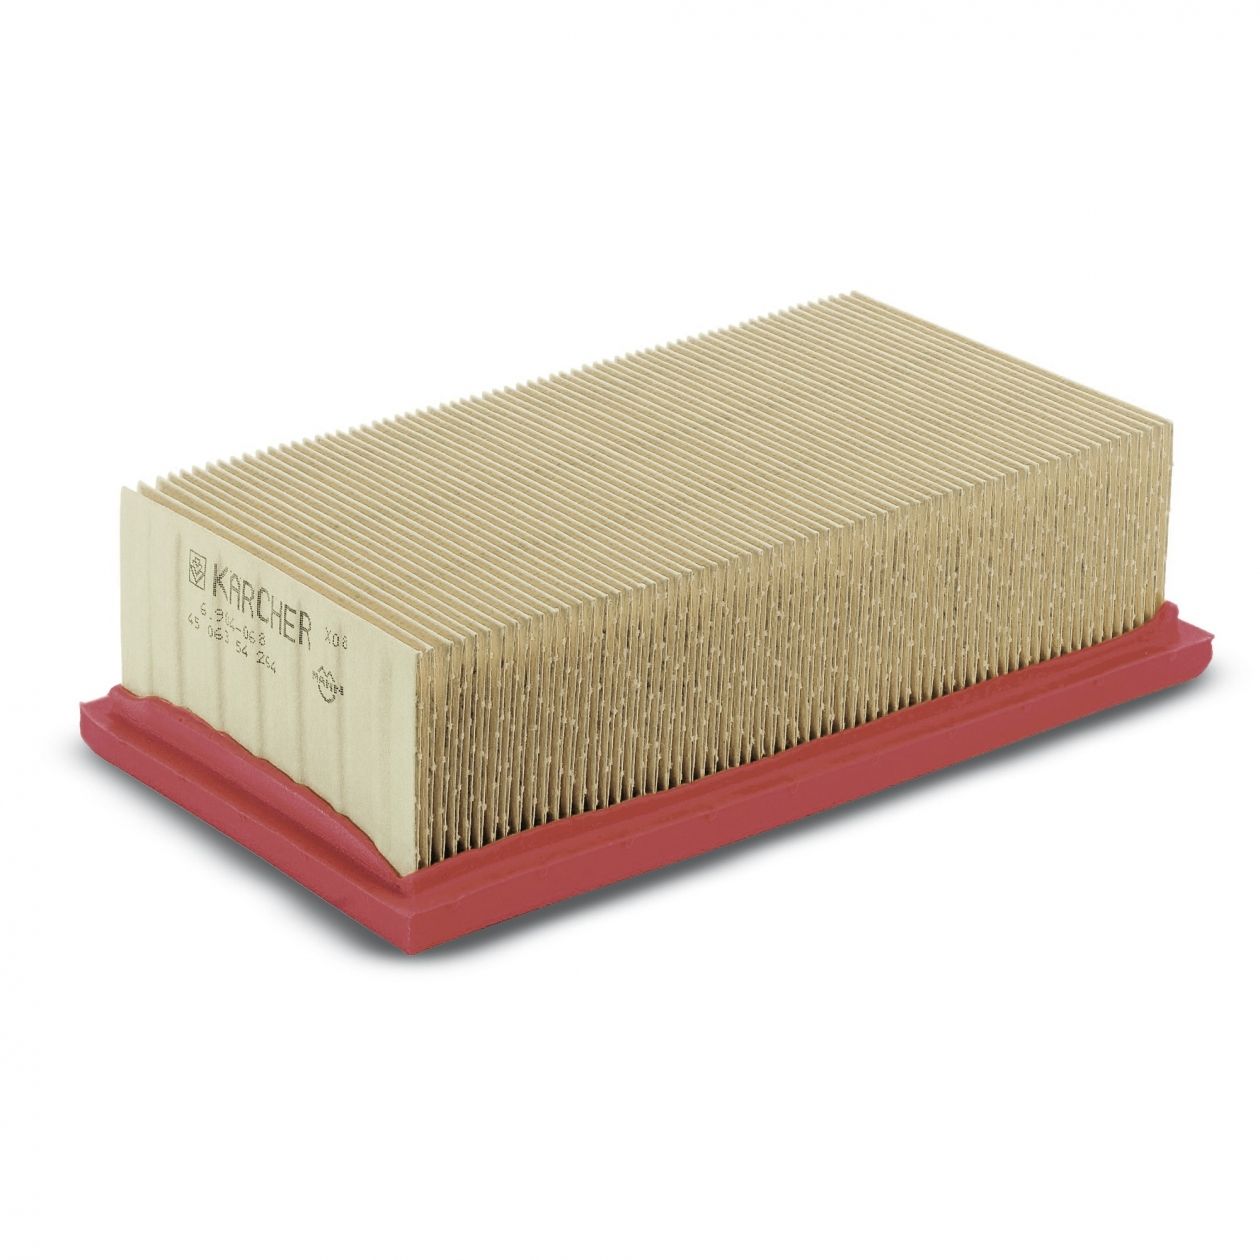 Плоский складчатый бумажный фильтр Karcher для пылесосов серий A, SE